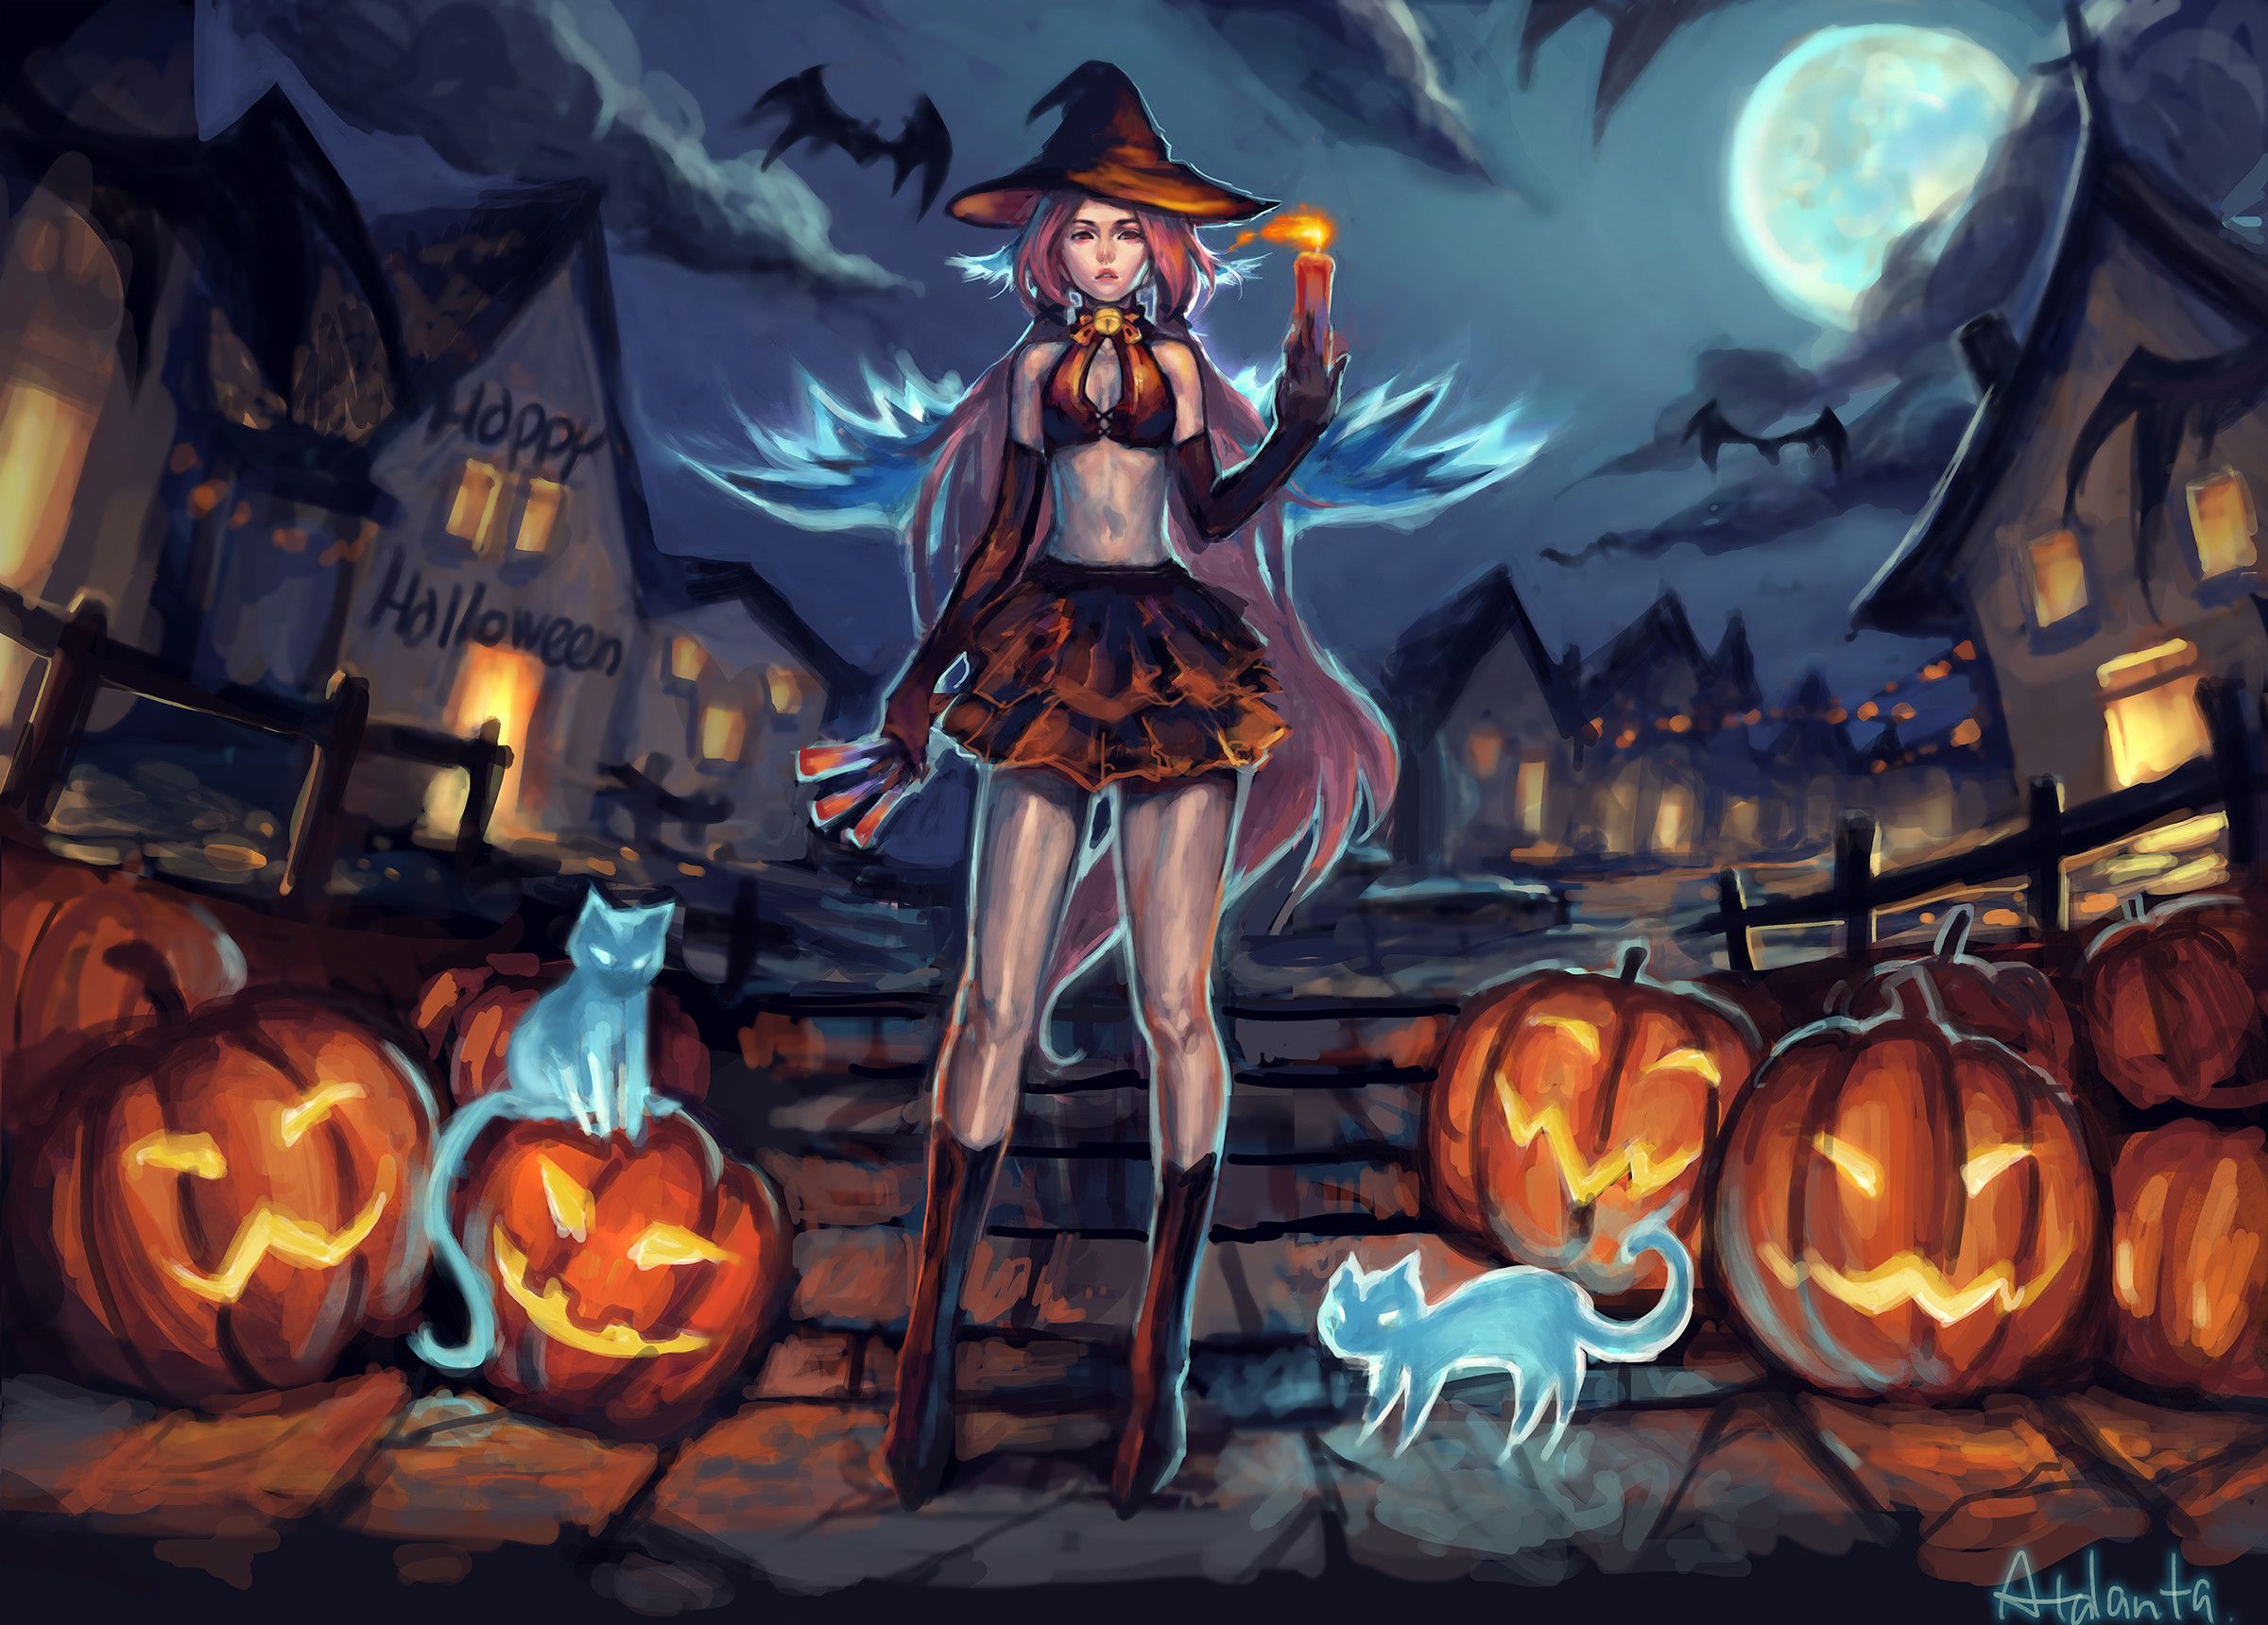 Res: 2400x Wallpaper Girls Anime Pumpkin Halloween Holidays Painting Art. Anime halloween, Papel de parede de halloween